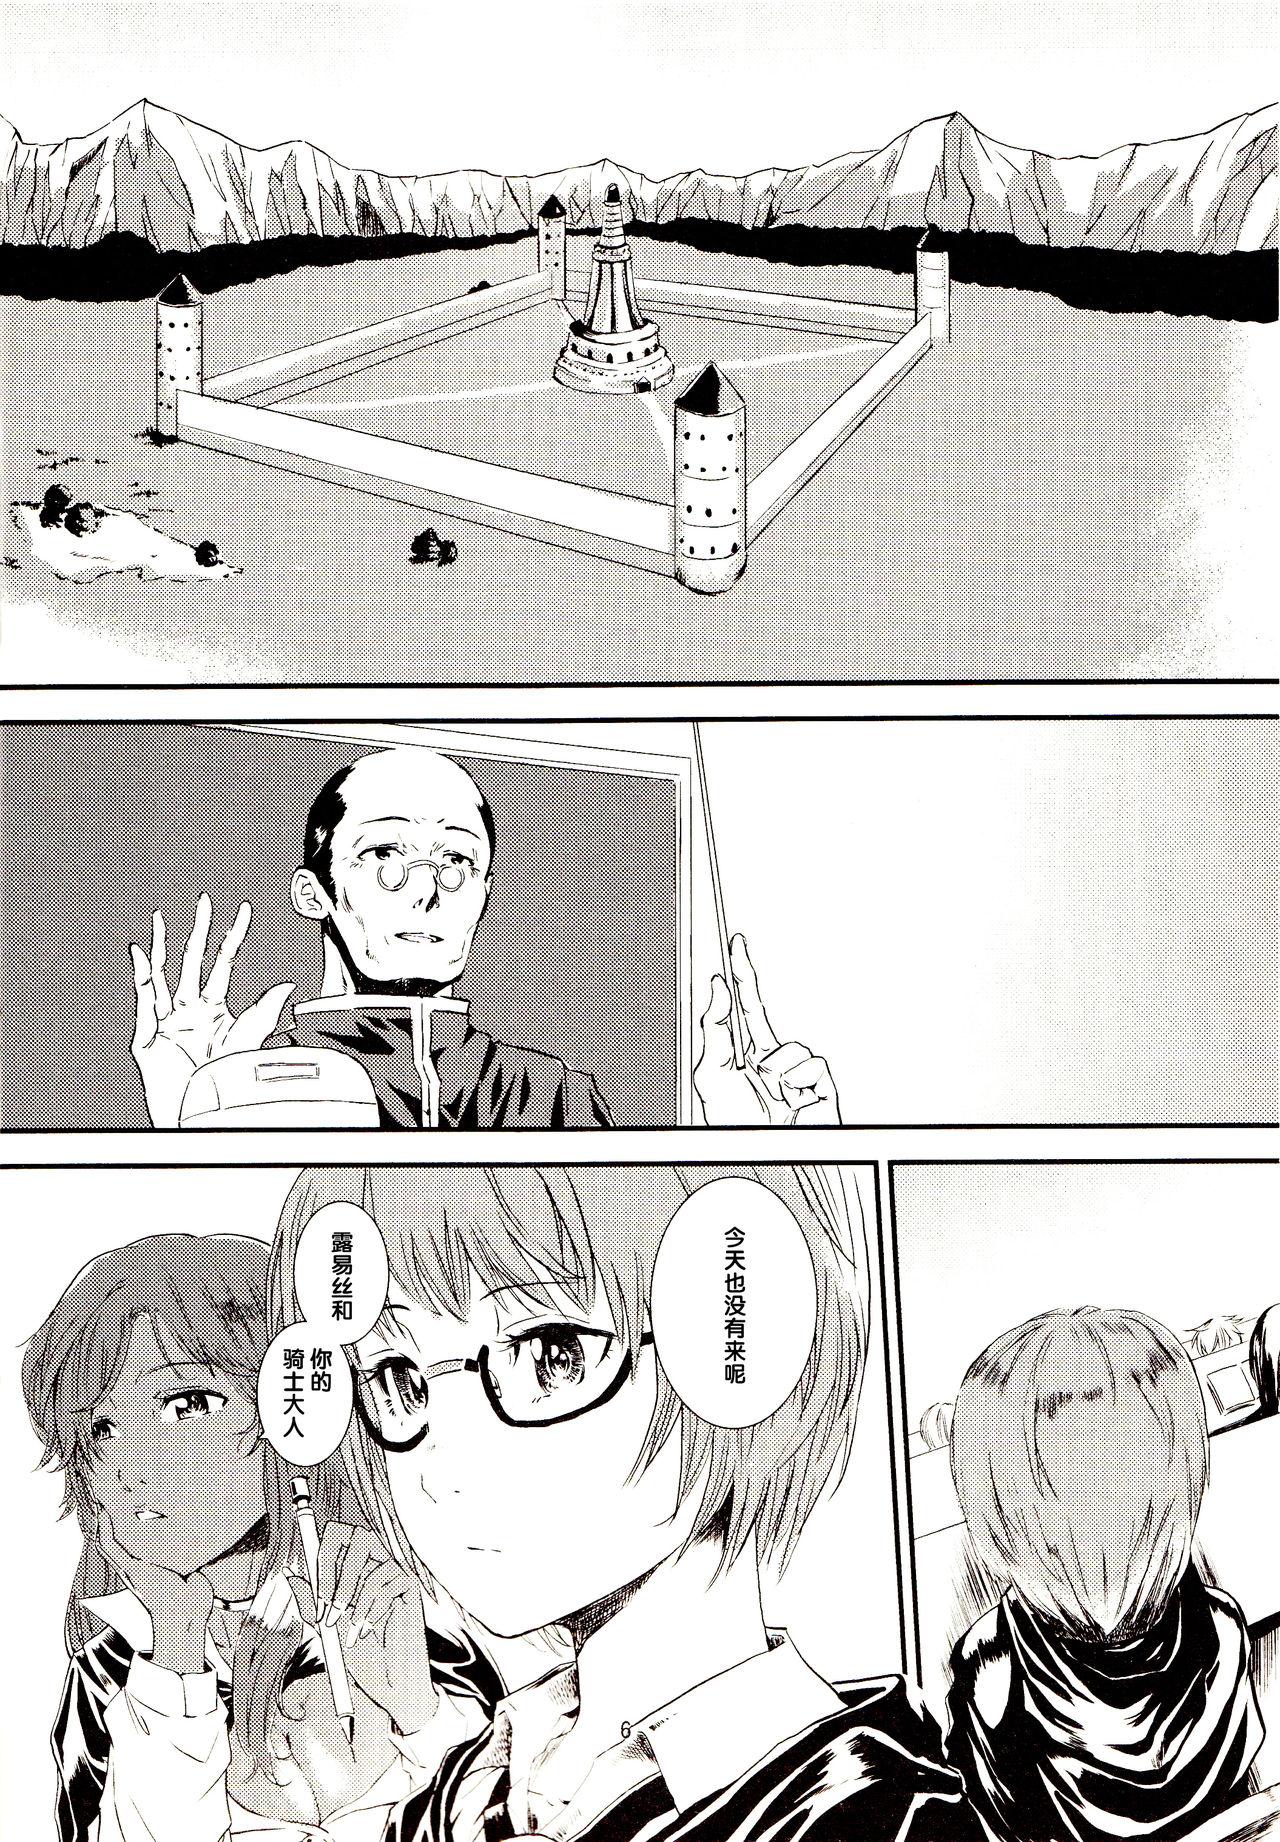 Perra Yukikaze no Tsukaima 2 - Zero no tsukaima Doggy Style - Page 6